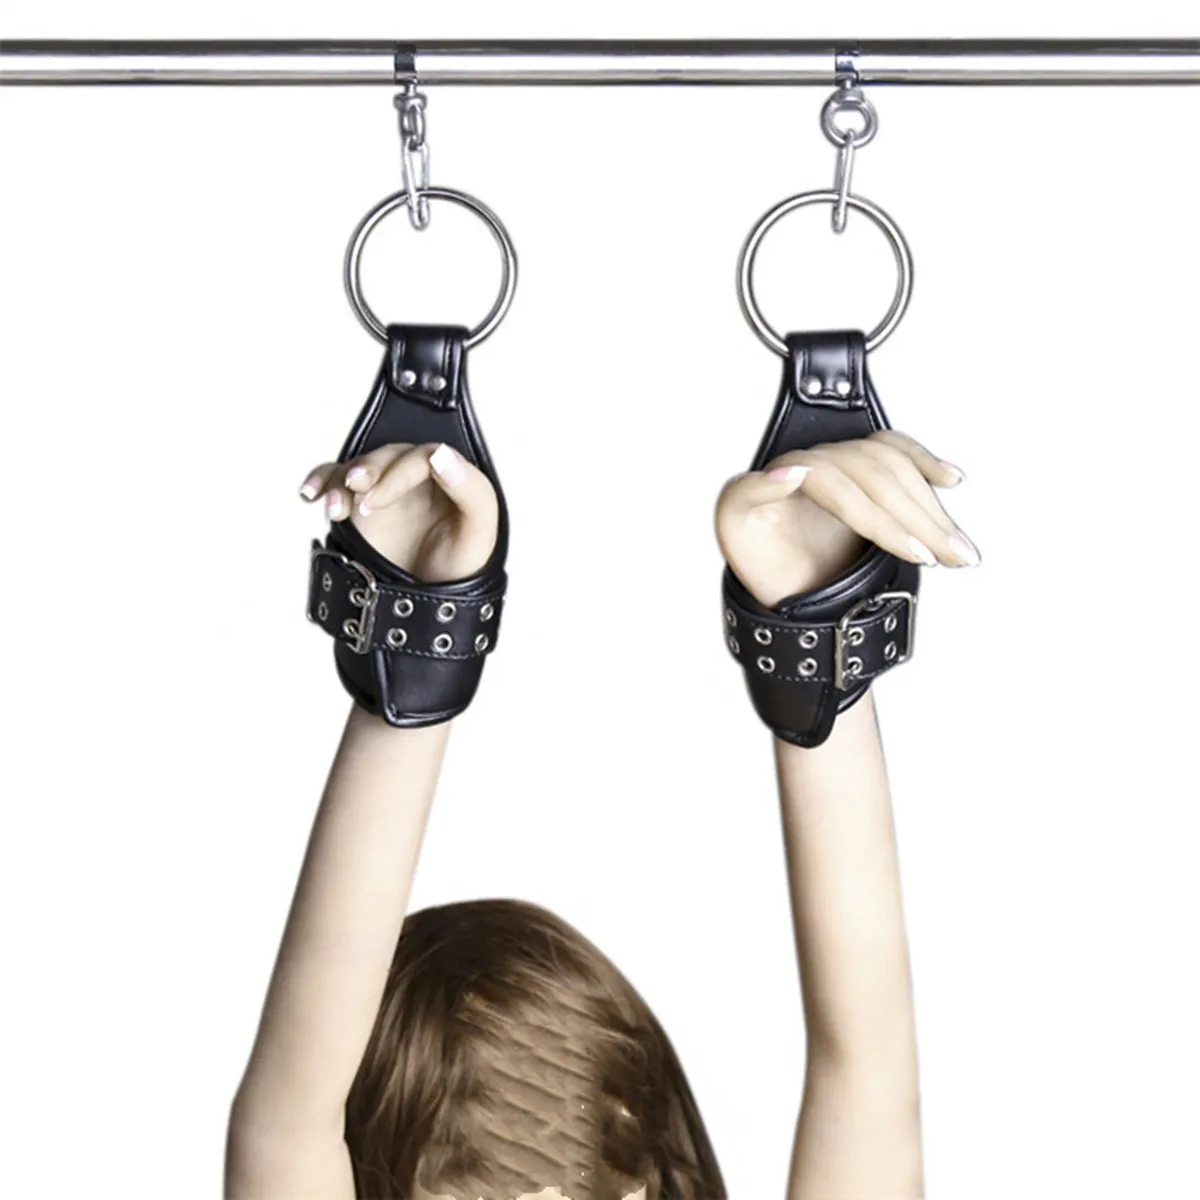 Sexiga leksaker för kvinnor läder ankel handledsupphängning manschetter återhållsamhet bdsm bondage rem håller hängande hängande handbojor9618025